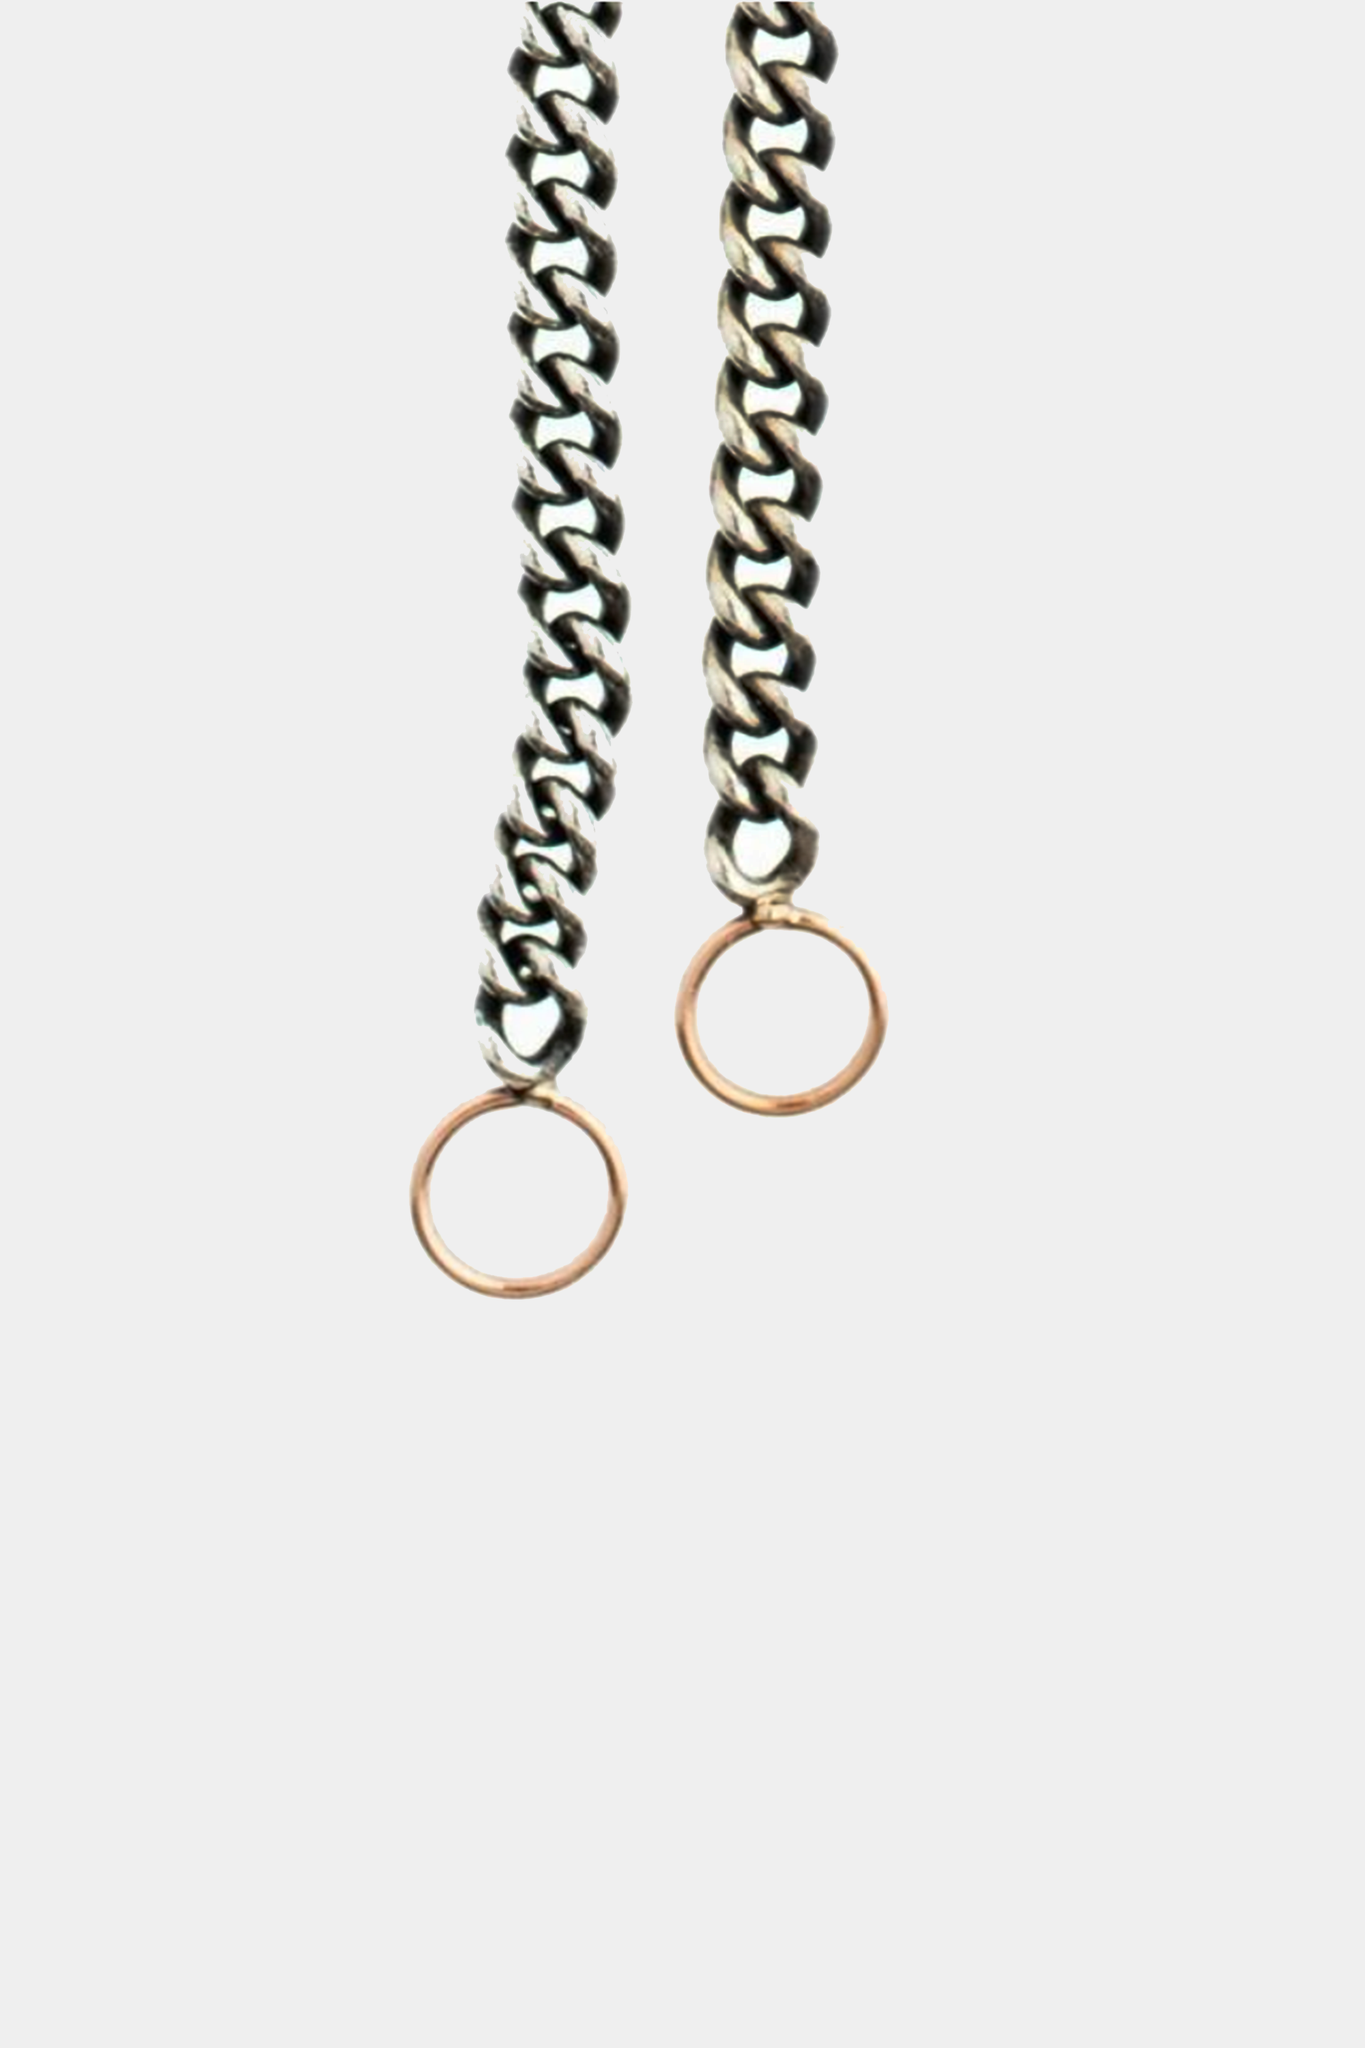 MARLA AARON - 6.5" Heavy Curb Chain in Silver bracelet, silver